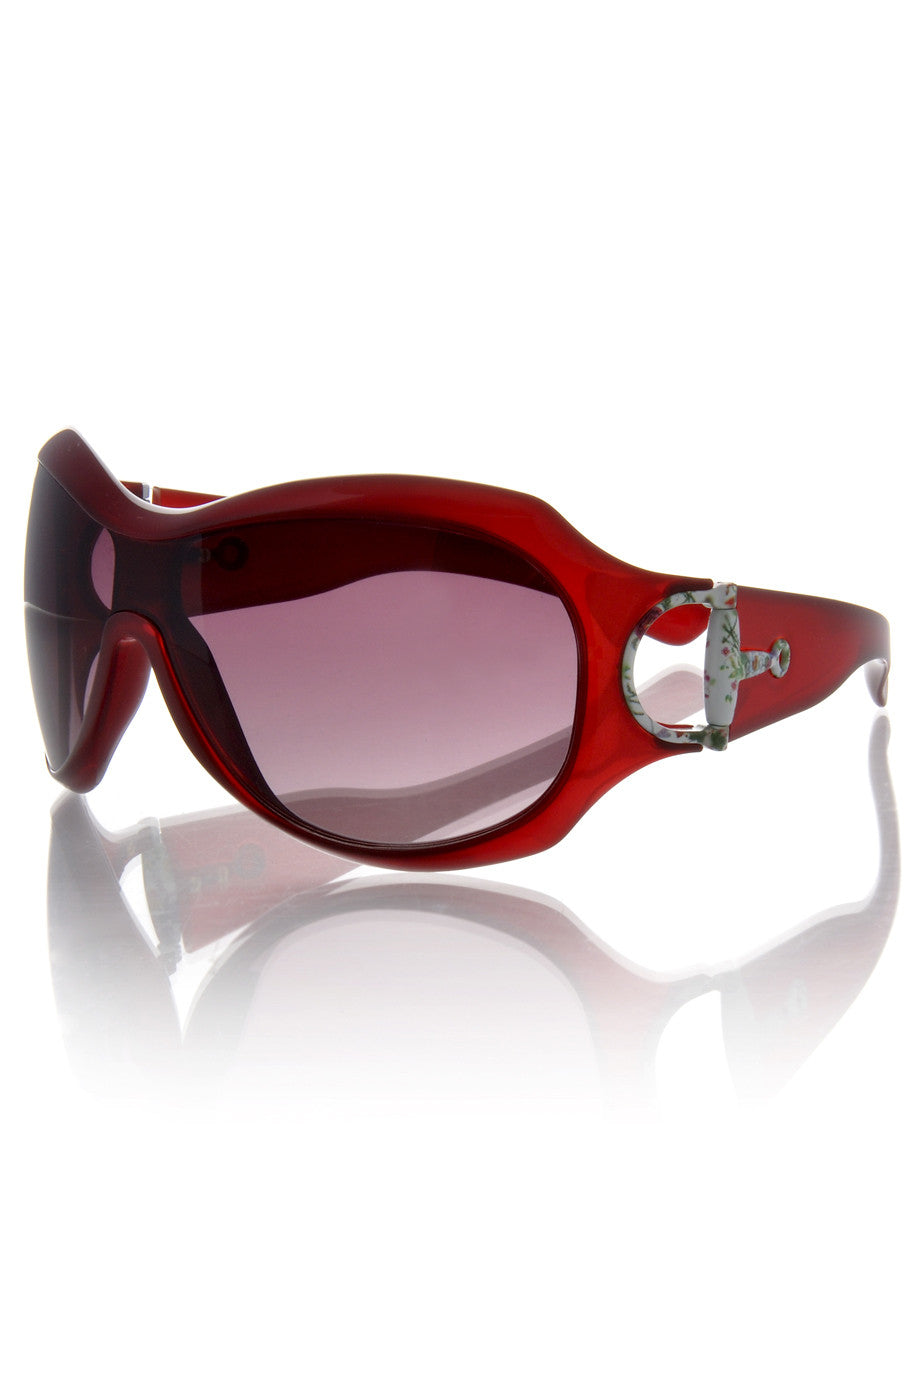 Κόκκινα Γυαλιά Ηλίου - Gucci 2900 | Γυναικεία Γυαλιά Ηλίου